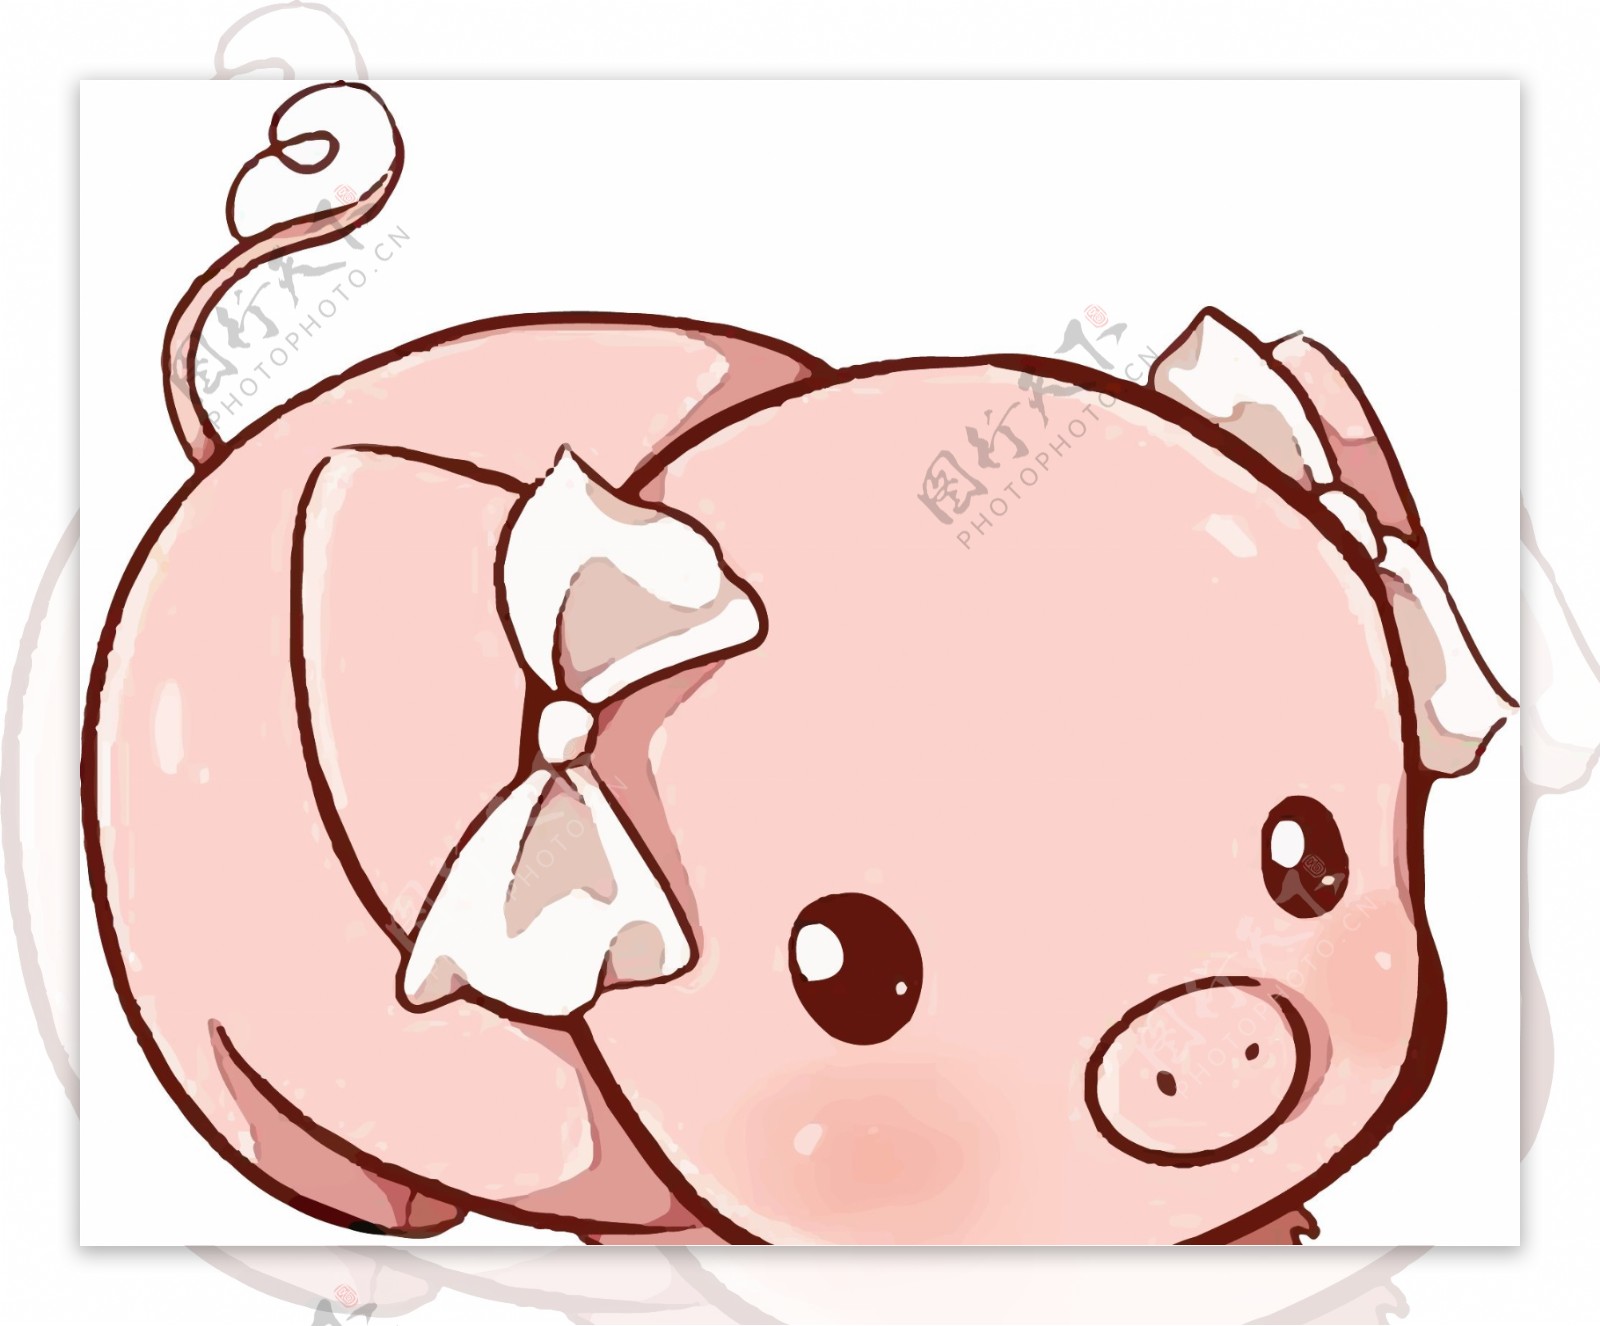 原创手绘一只笨笨的小猪